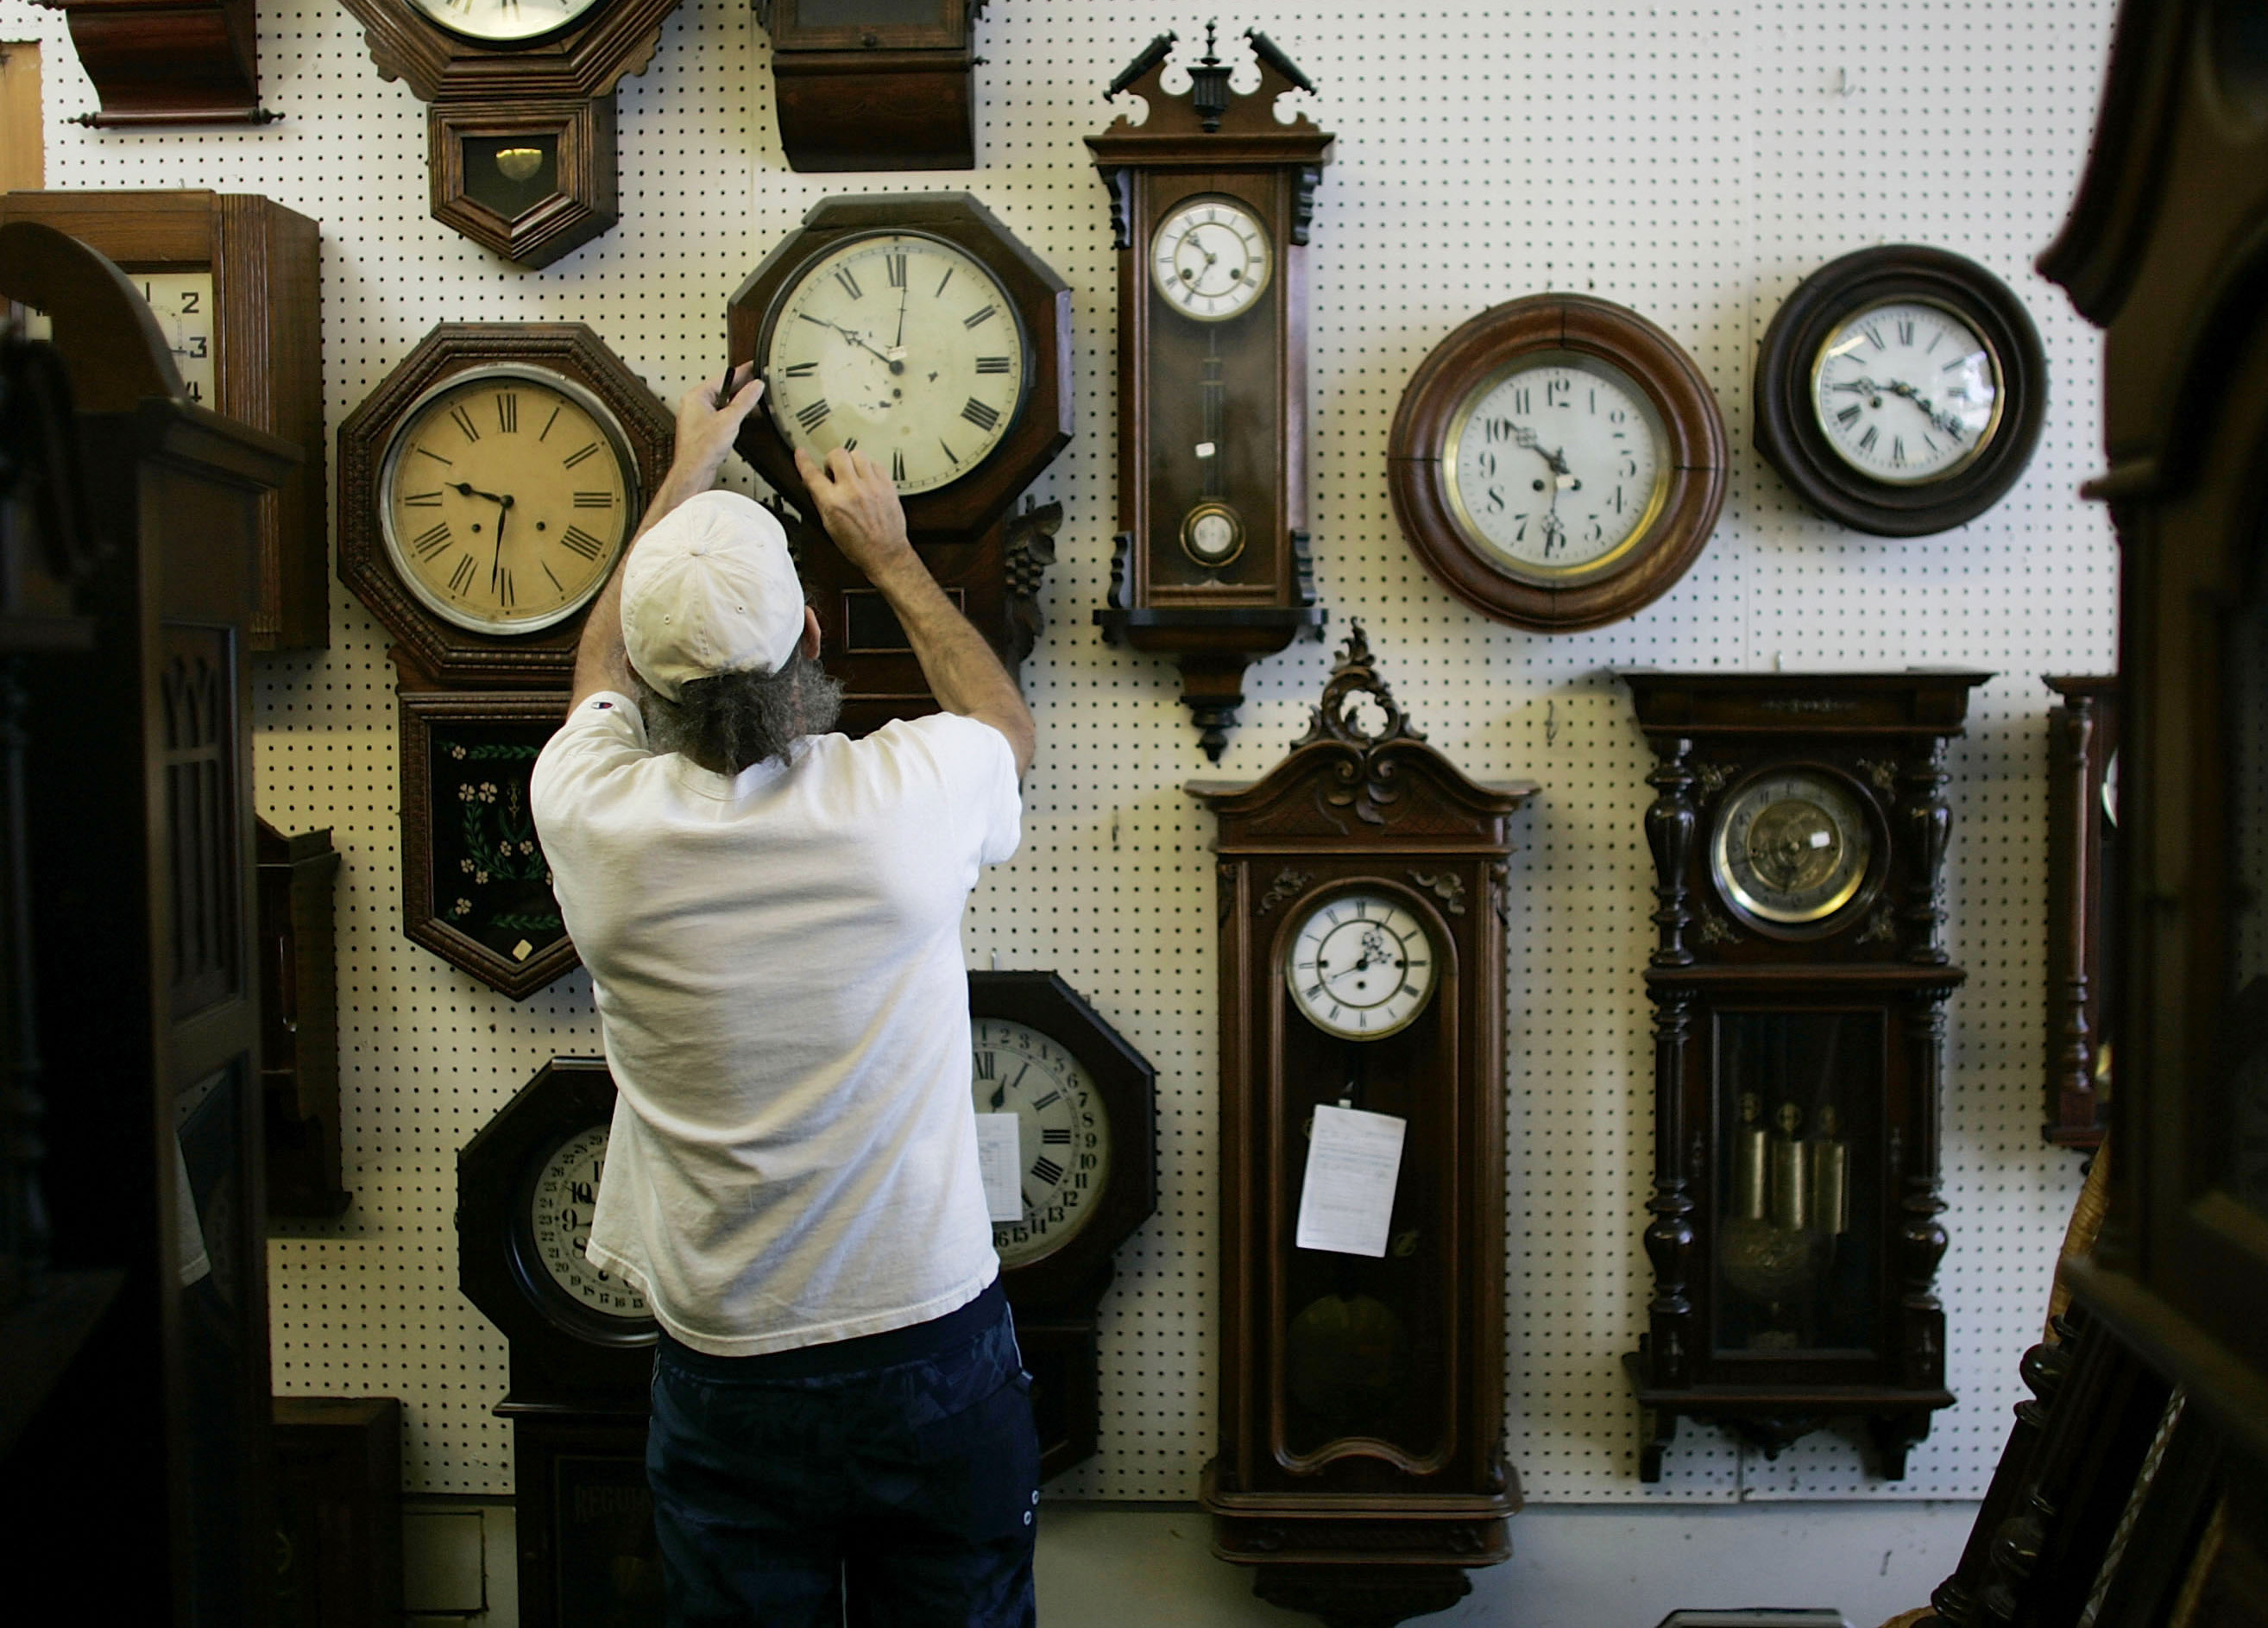 US Senate Passes Daylight Saving Time Bill That Would Make It